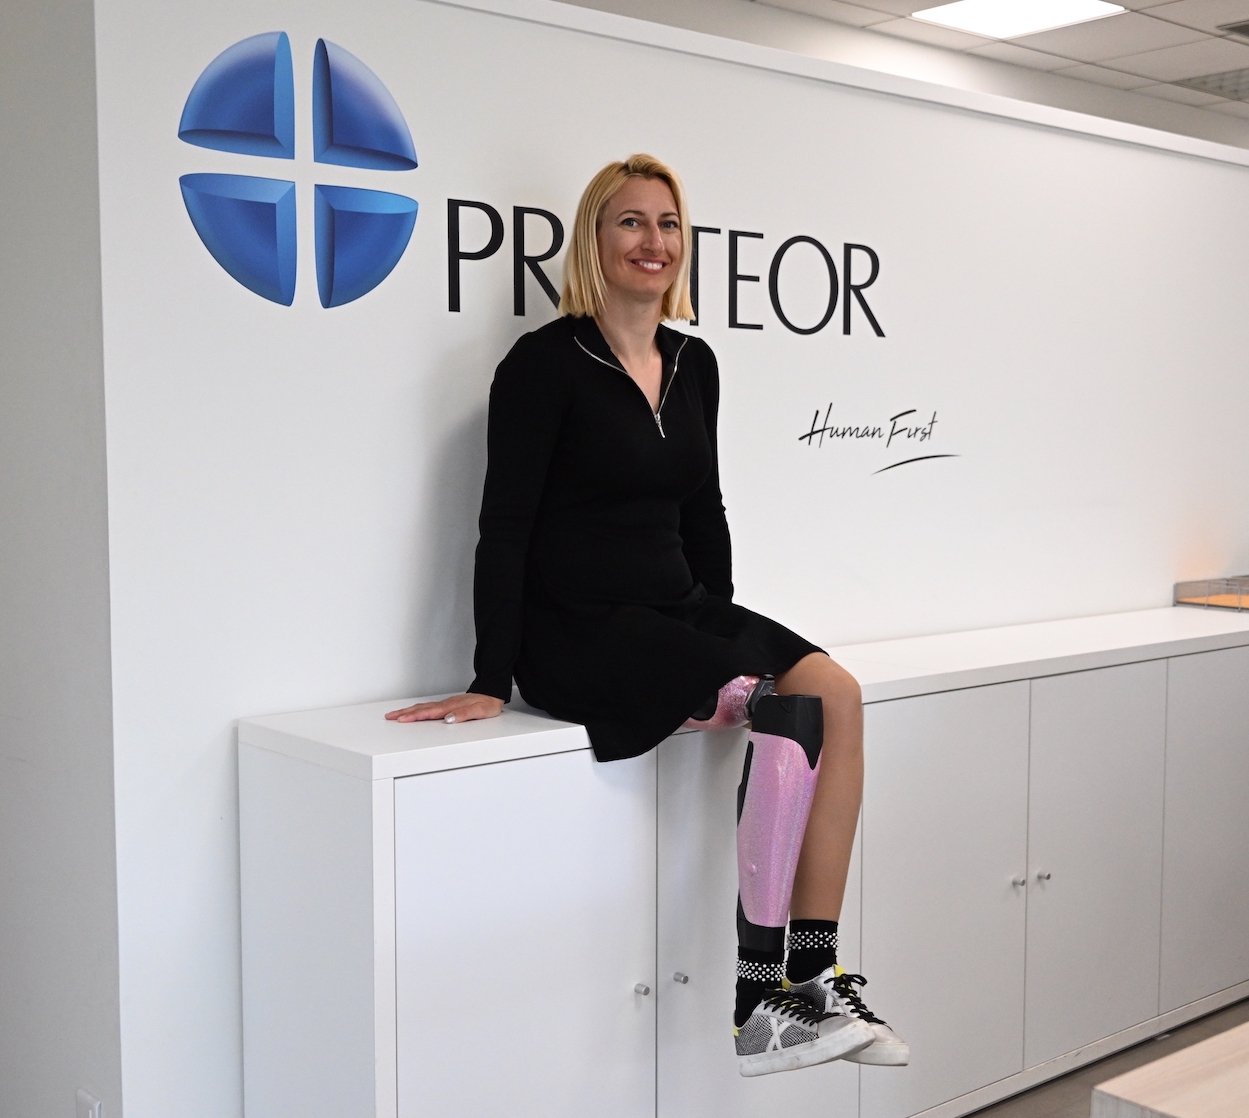 Tecnología: Dijon Proteor y su nueva prótesis SYNSYS están revolucionando el día a día de los pacientes